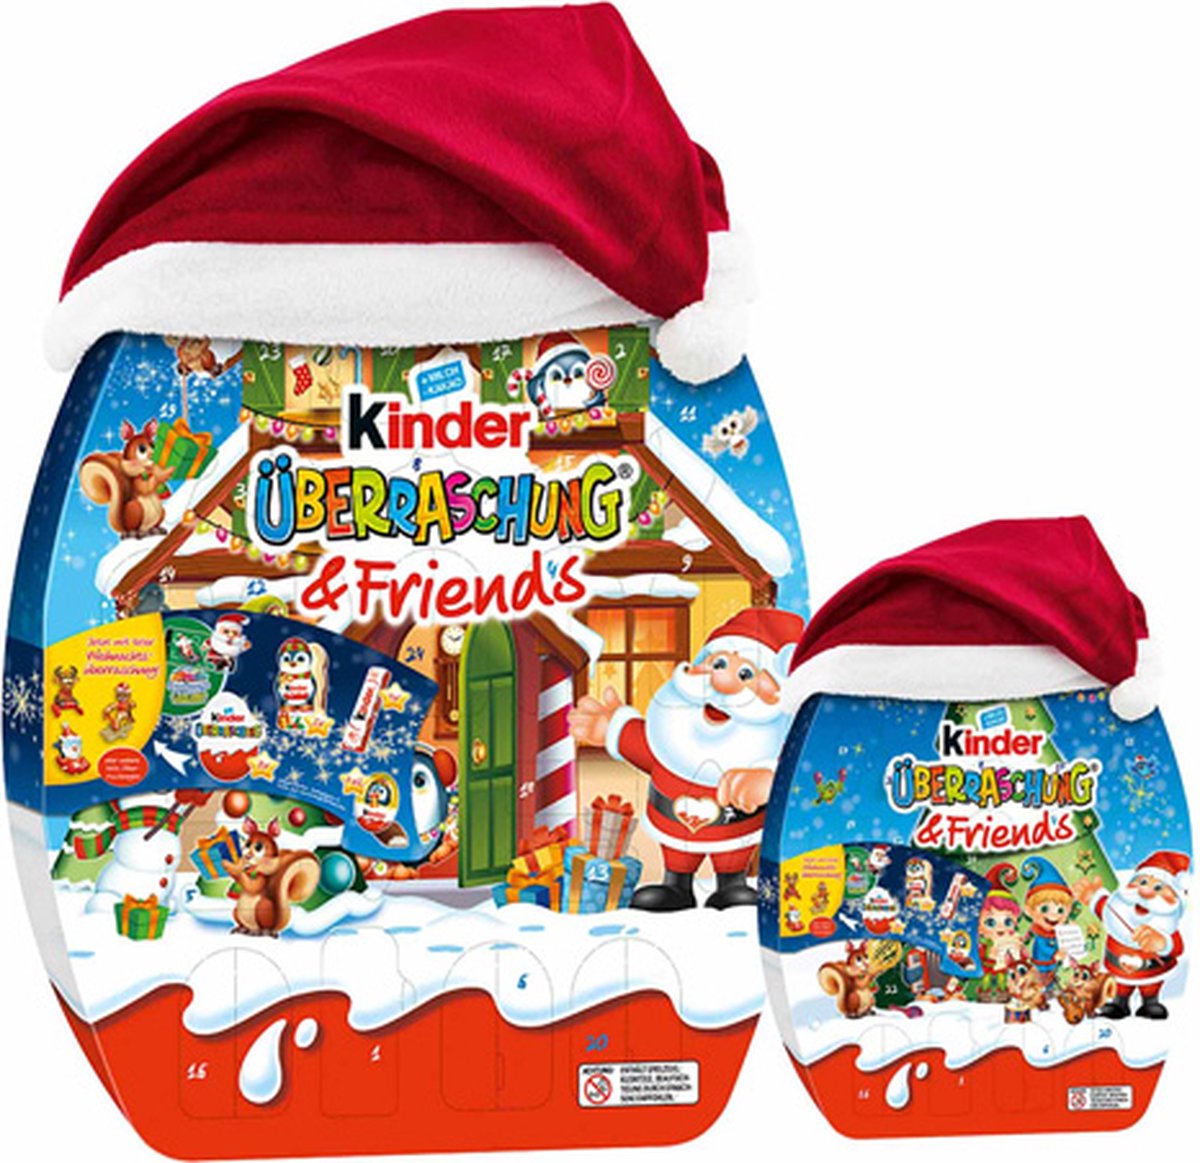 Kinder calendrier de l avent maxi puzzle - Ferrero - 343 g (343 g)